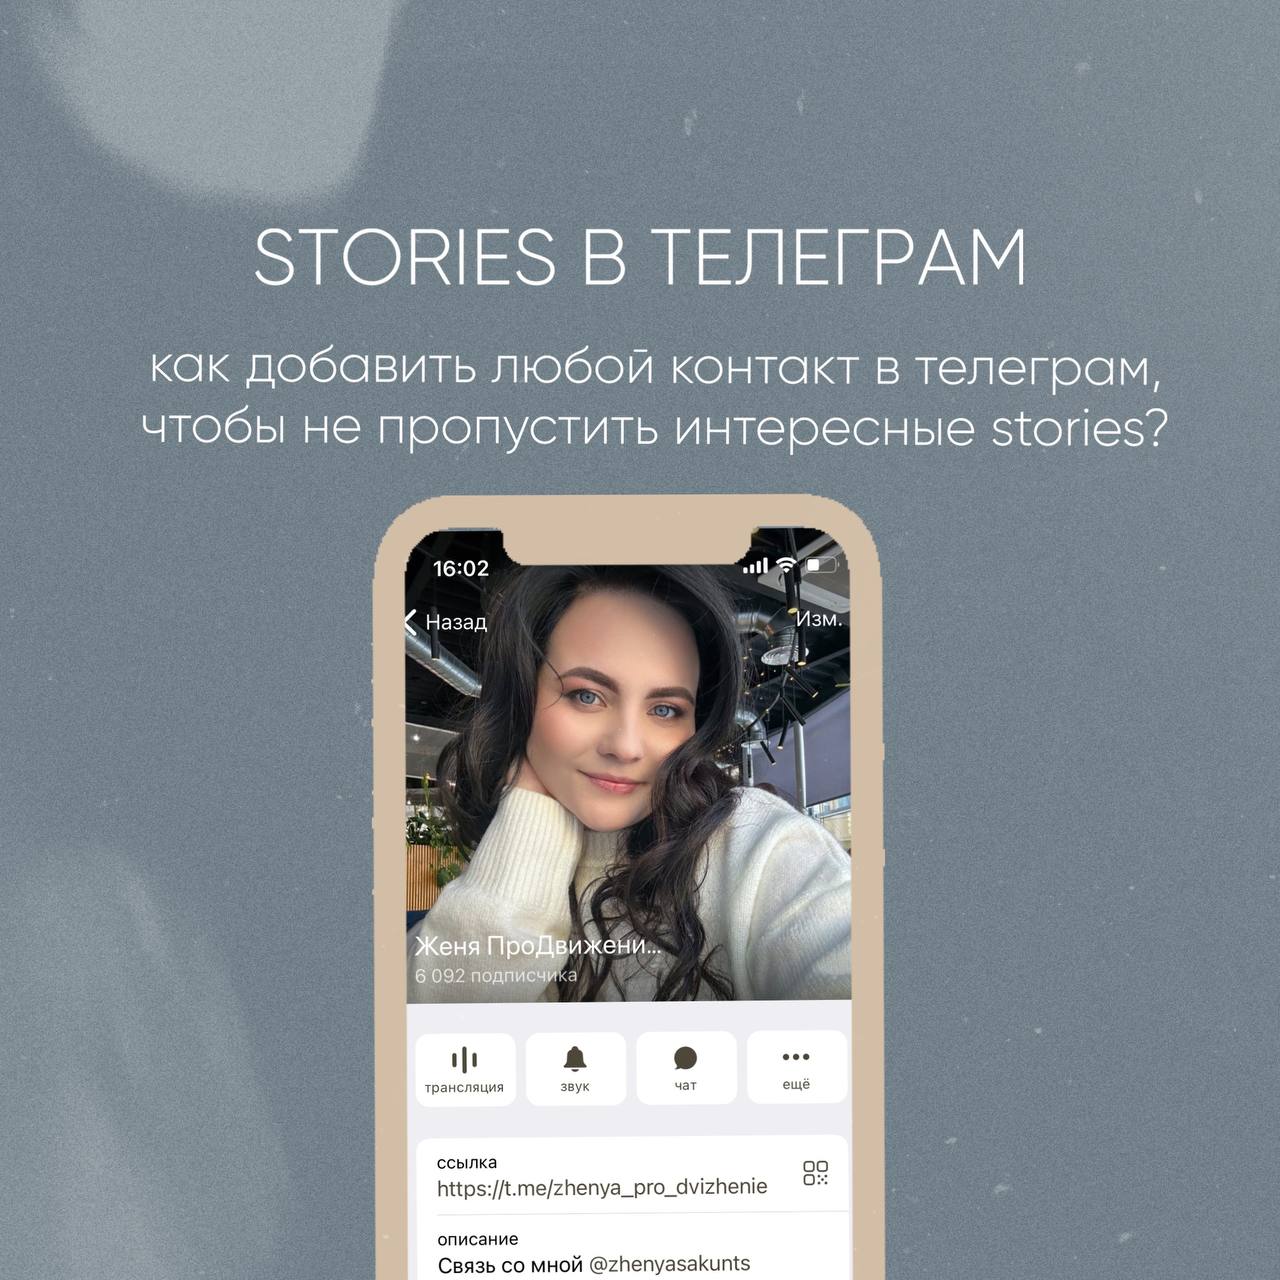 Обновить телеграмм на телефоне бесплатно без регистрации на русском языке фото 104